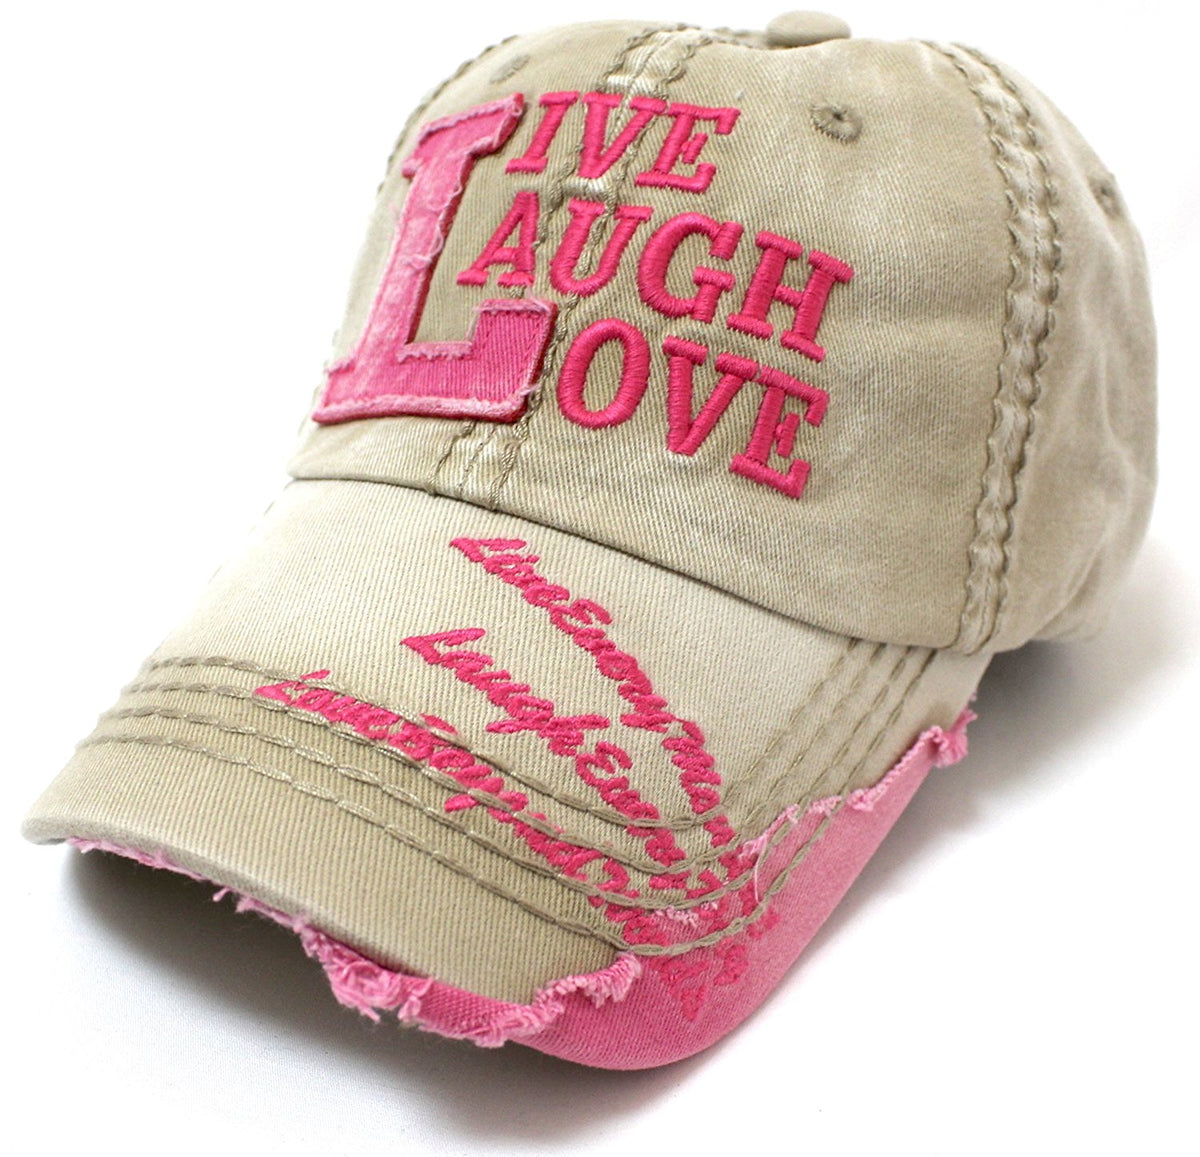 KHAKI Vintage Cap w/ Barbie PINK "LIVE LAUGH LOVE" Patch Embroidery Details - Caps 'N Vintage 